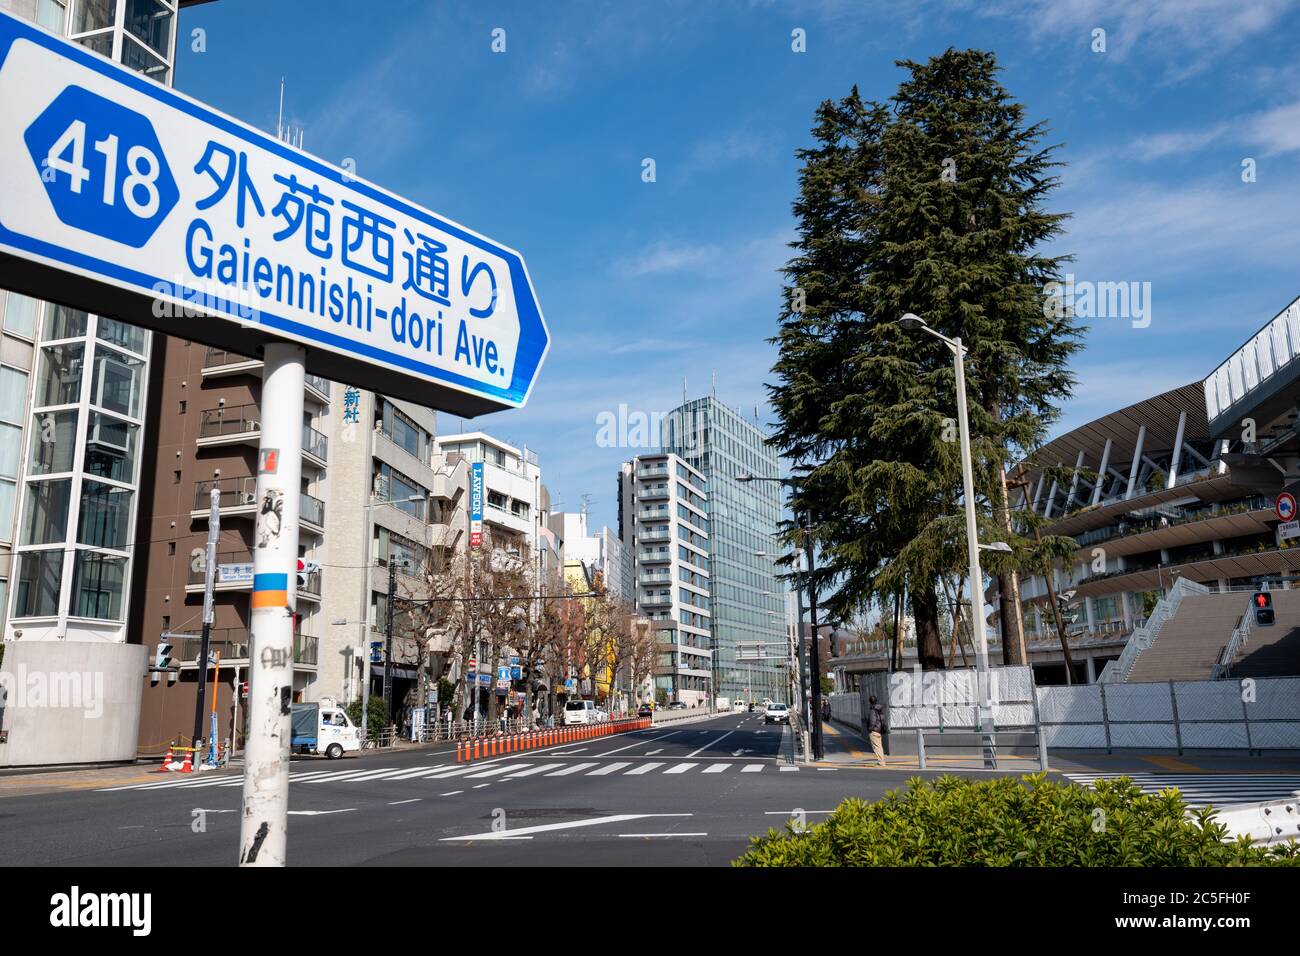 Cartello stradale di Gaiennishi-dori Ave., edifici della città, strada quasi vuota e il nuovo Stadio Nazionale. Tokyo, Giappone. Foto Stock